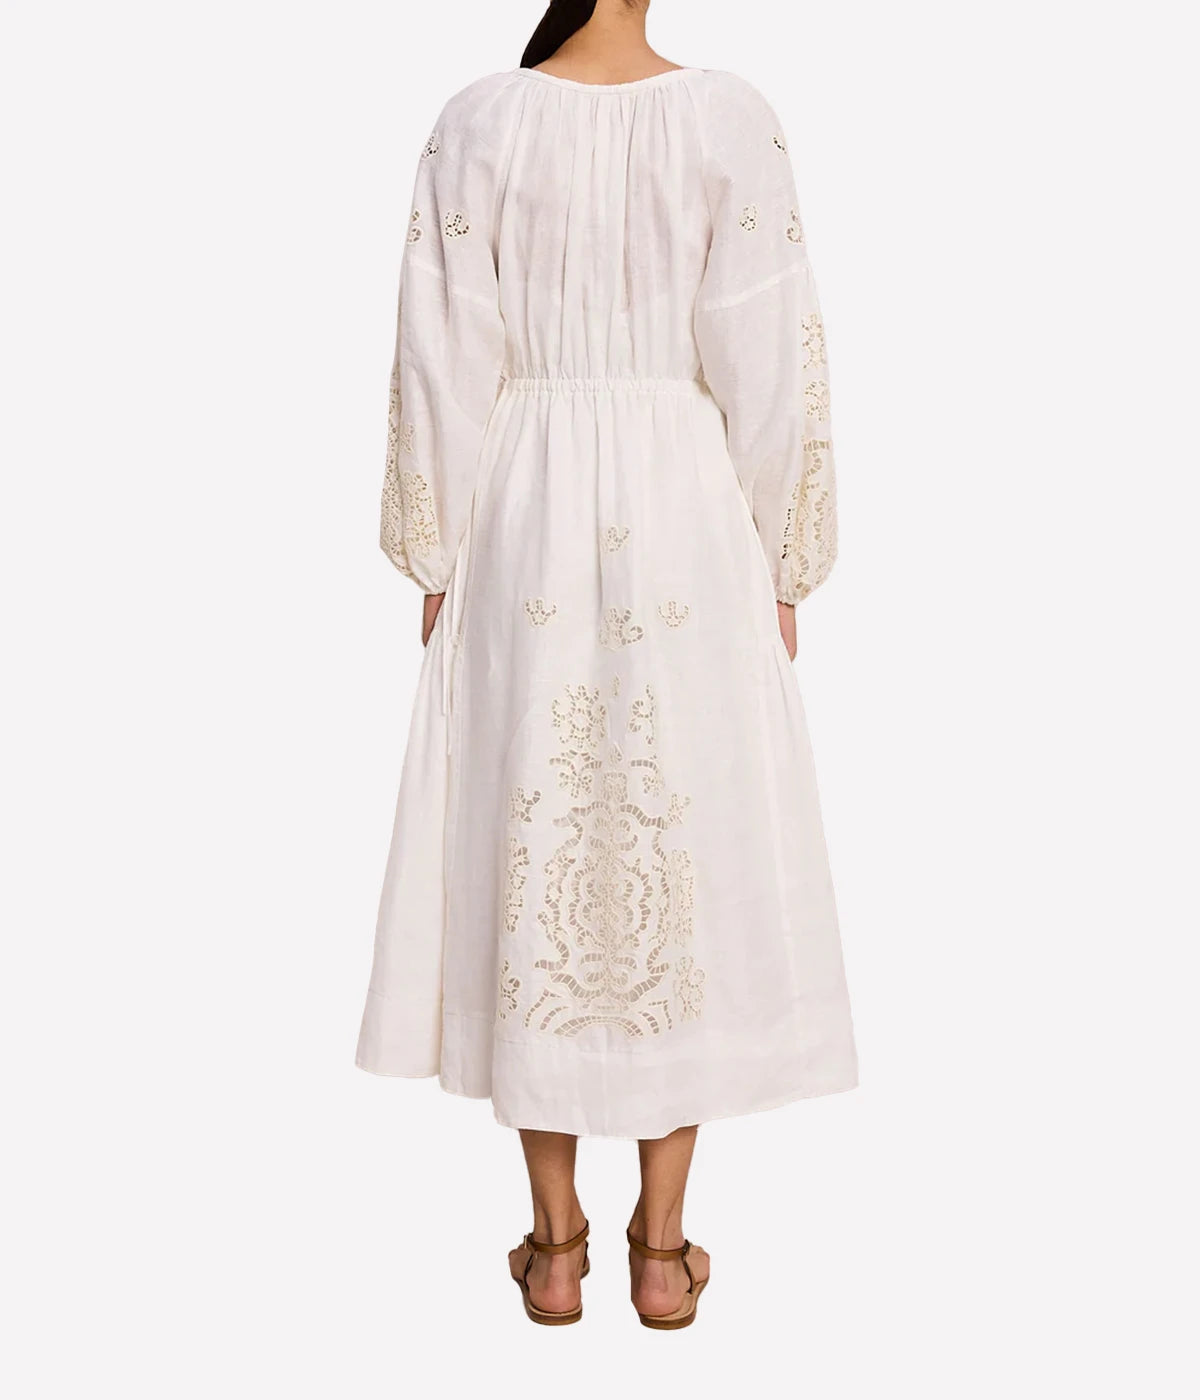 Capri Dress in White & Off White